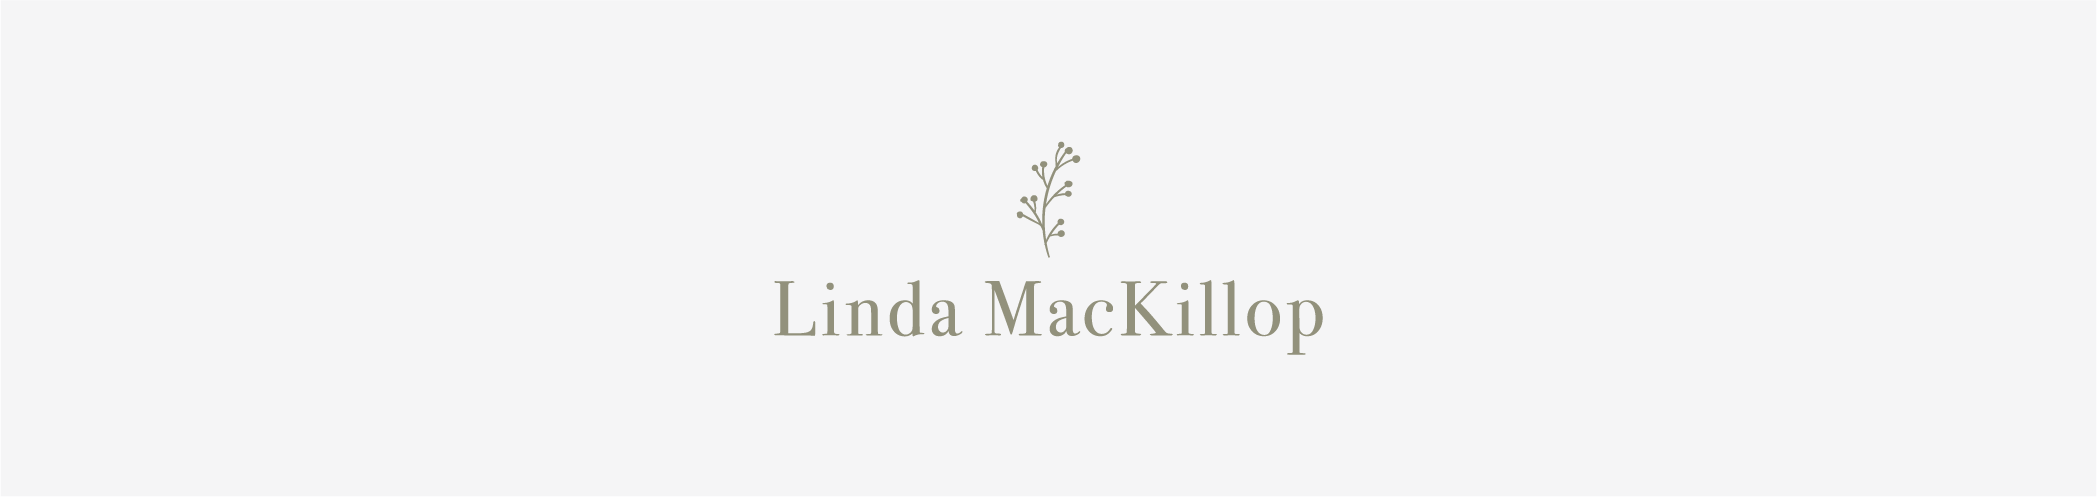 Linda MacKillop